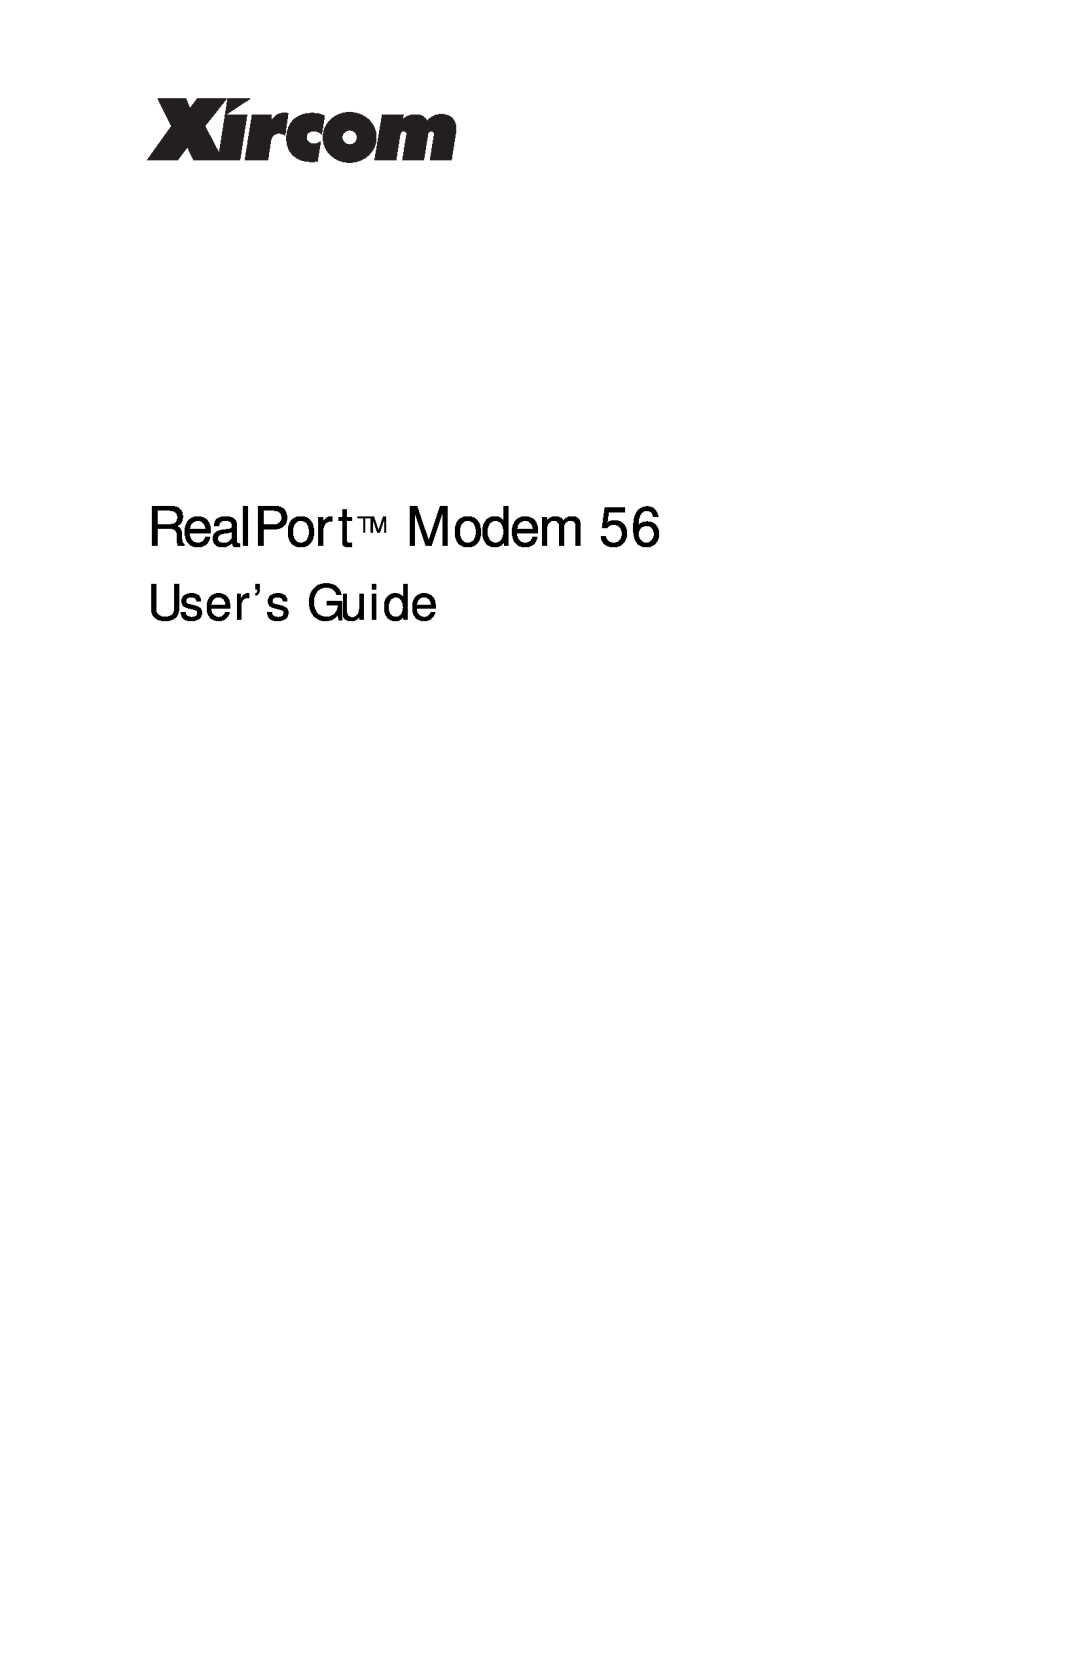 Xircom RM56V1 manual User’s Guide, RealPortTM Modem 